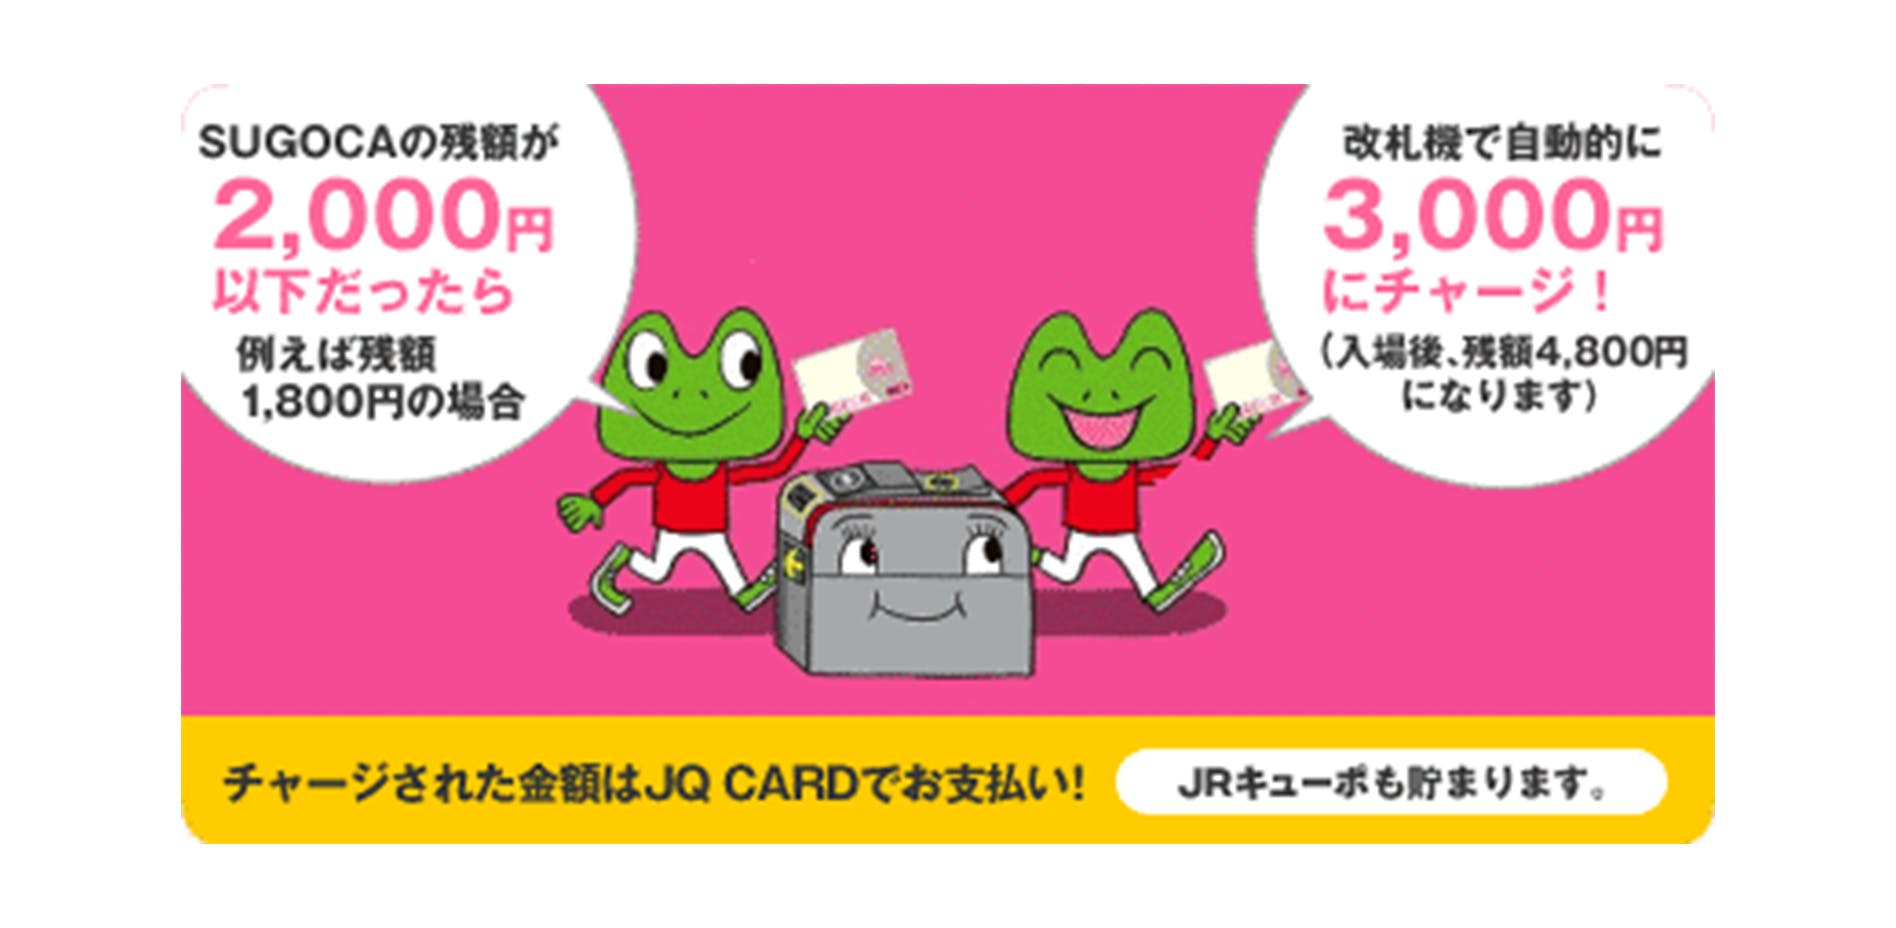 SUGOCAの残額が2000円以下だったら例えば残額1800円の場合、改札機で自動的に3000円にチャージ！（入場後、残額4800円になります）　チャージされた金額はJQ CARDでお支払い！JRキューポも貯まります。